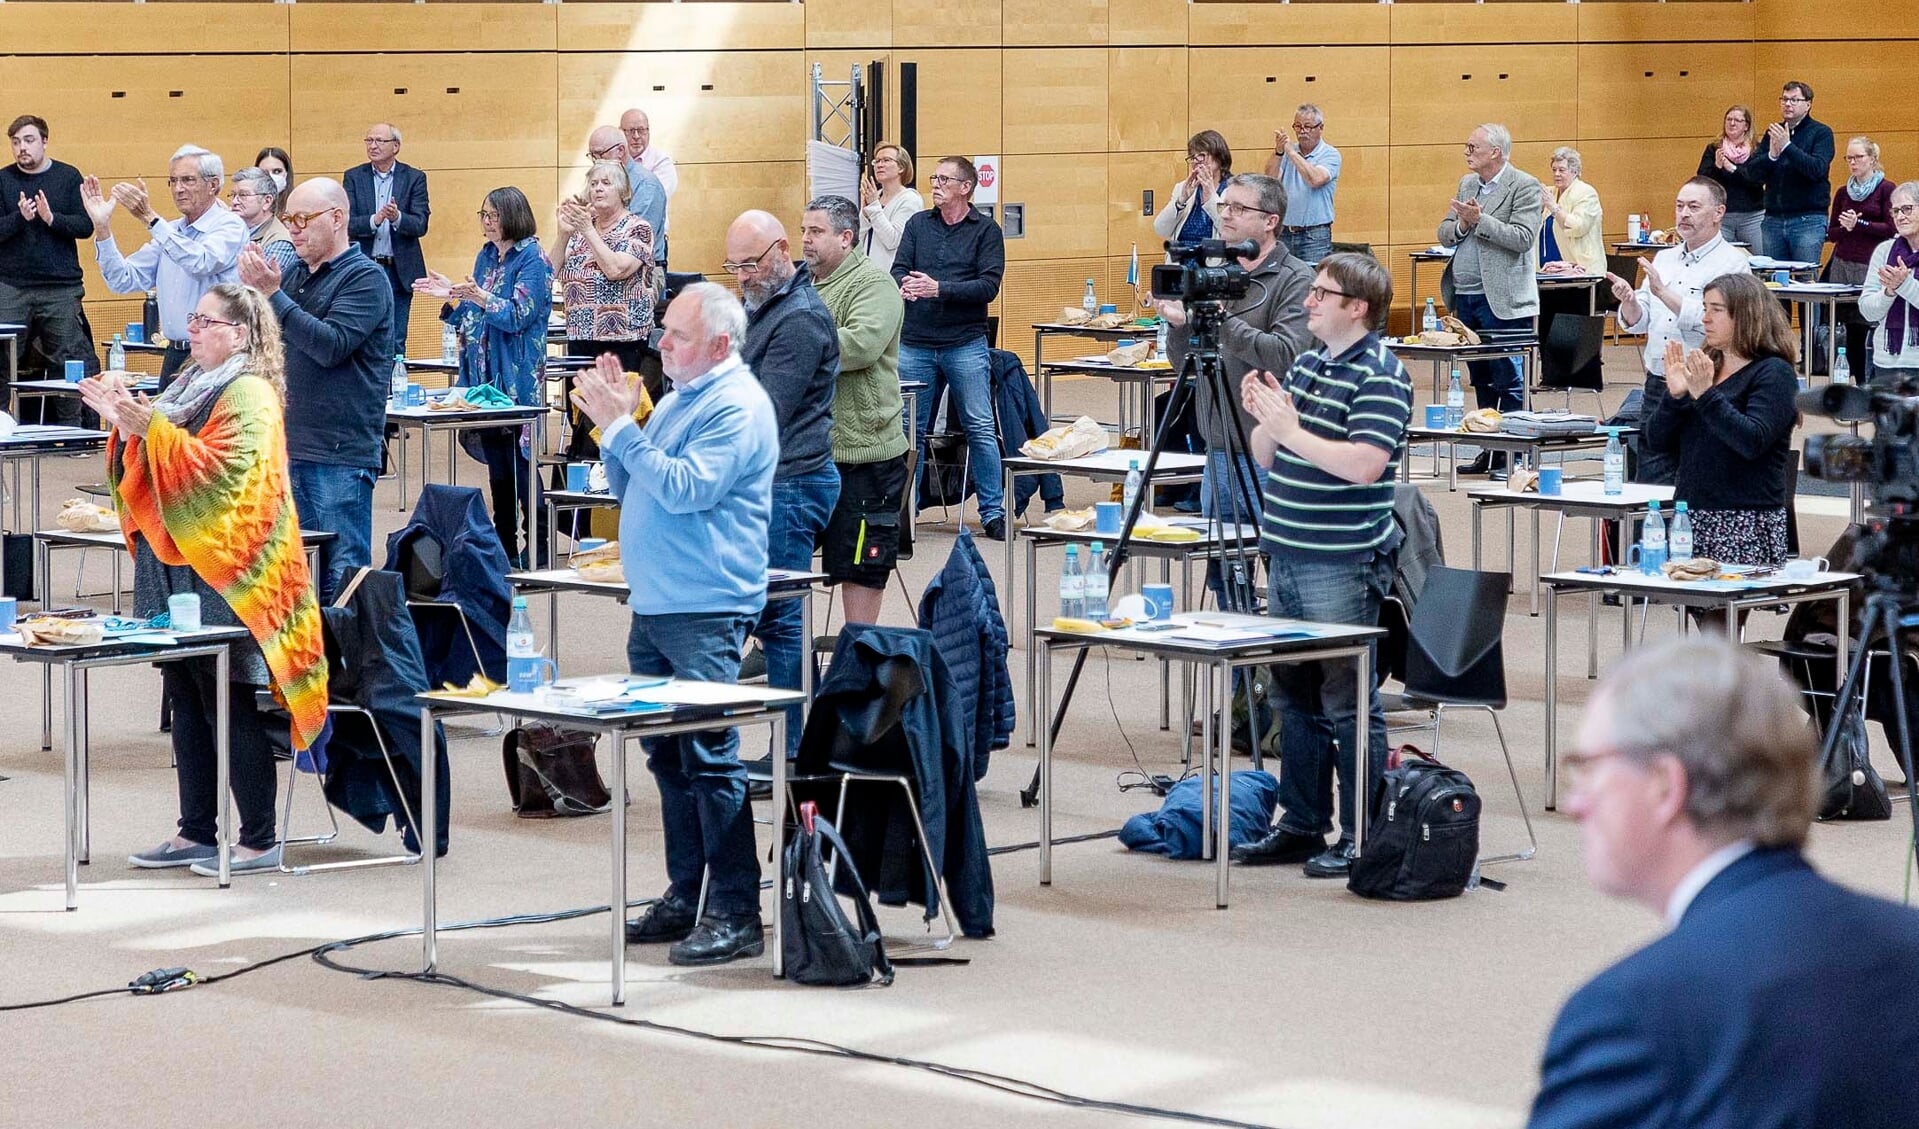 Der var 127 delegerede til landsmødet i A. P. Møller Skolen i Slesvig. Rekordstort i nyere tid. Fotos: Lars Salomonsen